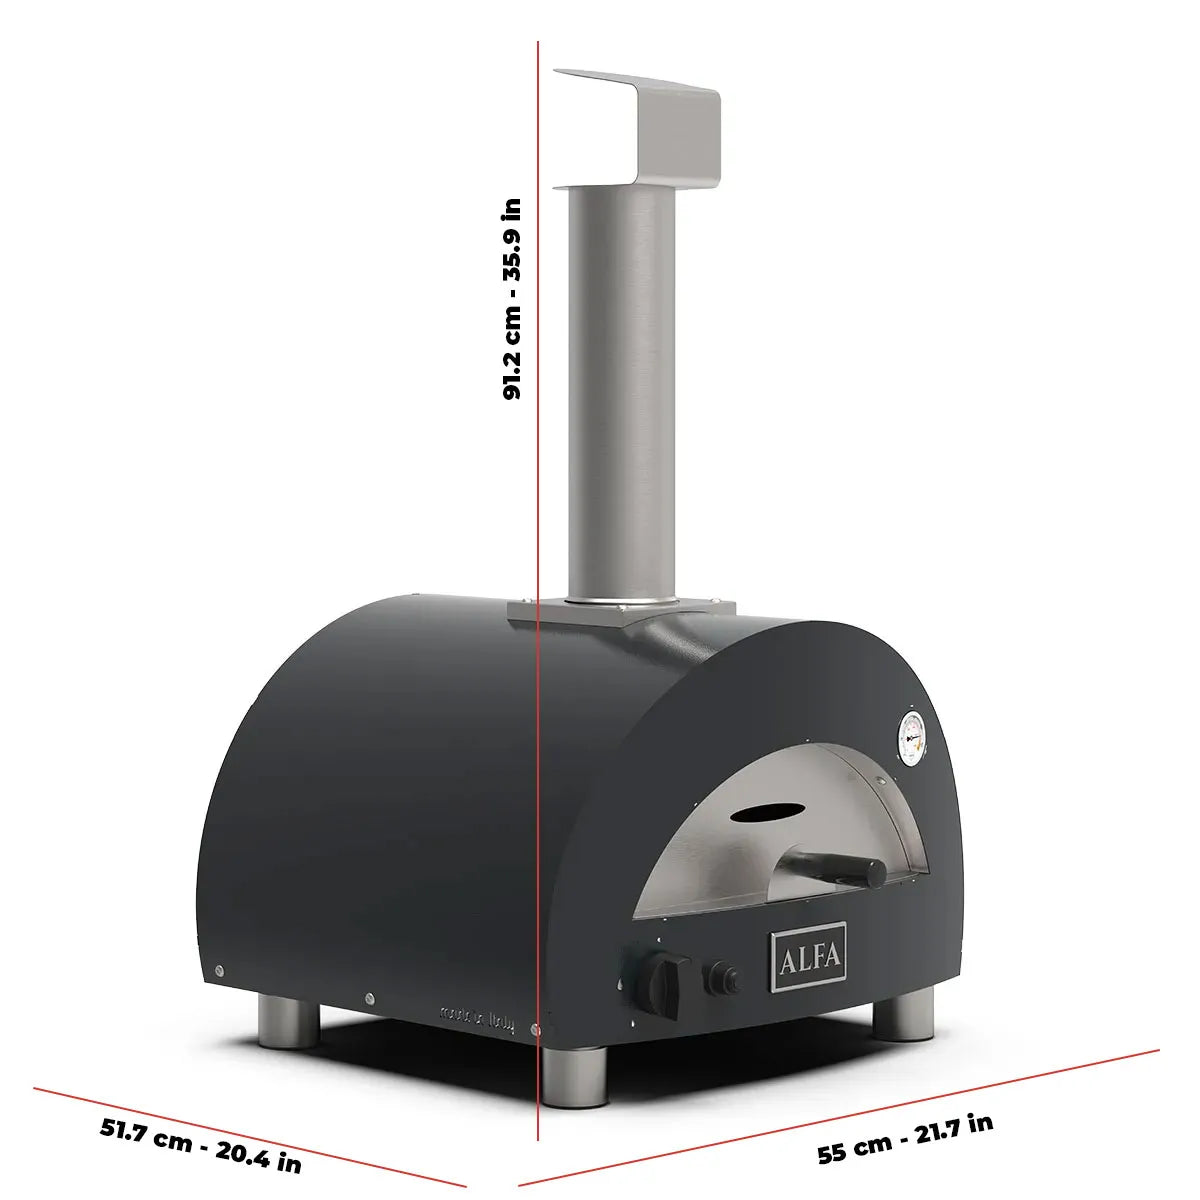 Alfa Portable Pizza Oven